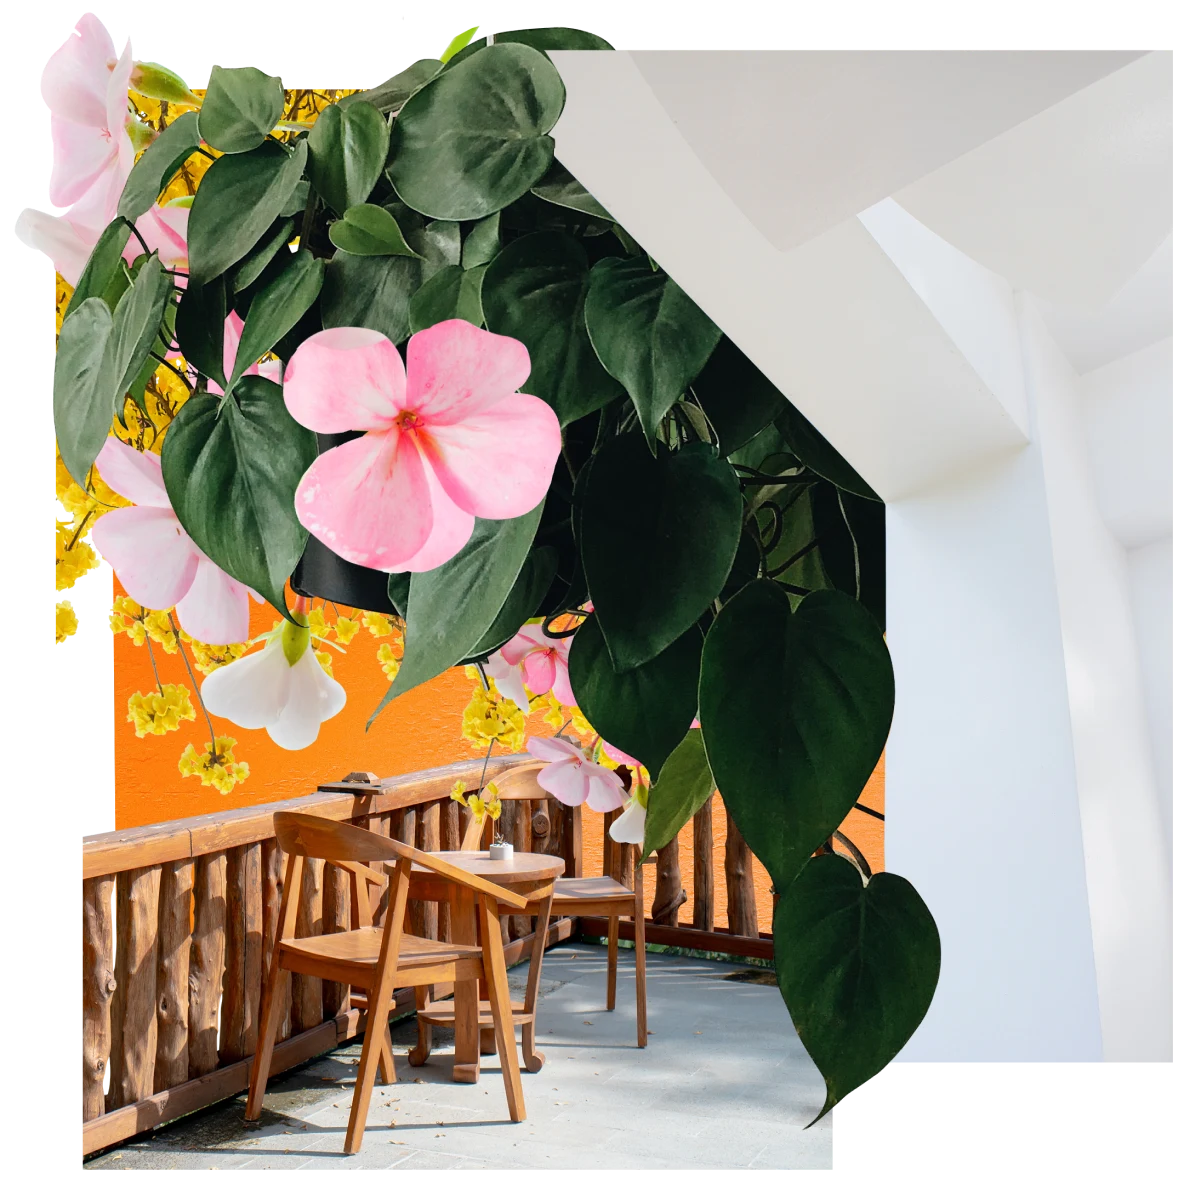 Collage di immagini con oggetti bianchi, verdi, marroni e gialli. Al centro, foglie verdi che scendono dal soffitto tra cui spuntano fiori rosa e gialli. A destra, la parte inferiore di una scala bianca. In primo piano, due sedie di legno e un tavolo rotondo in una terrazza esterna.